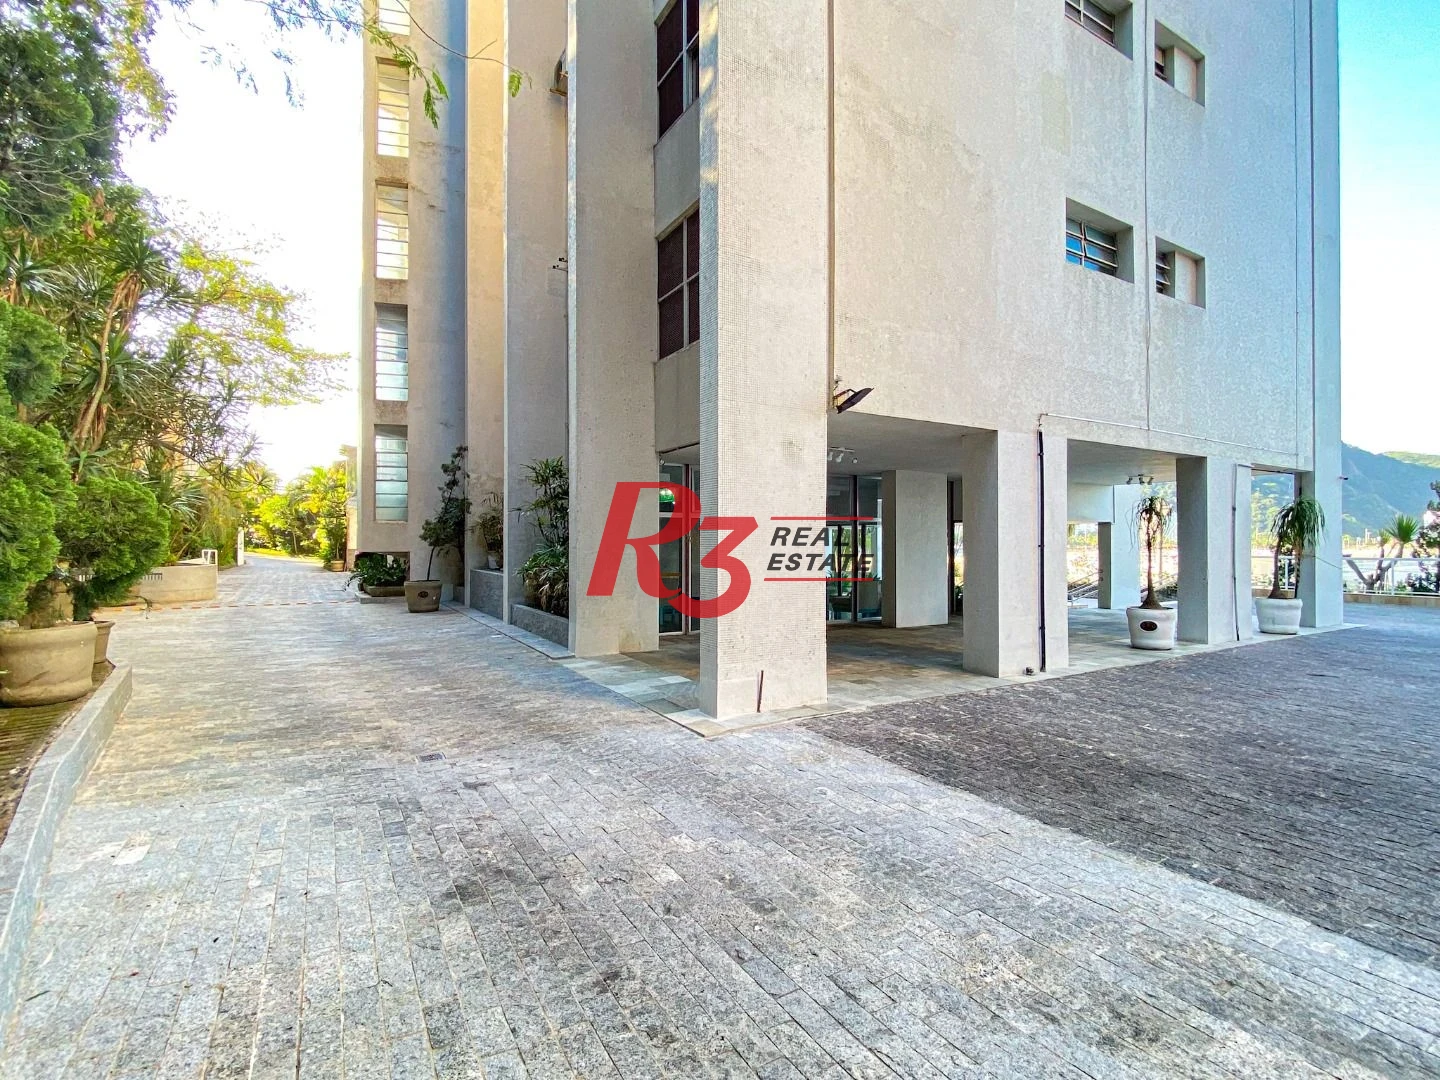 Apartamento com 4 dormitórios à venda, 235 m² por R$ 1.200.000,00 - Ilha Porchat - São Vicente/SP